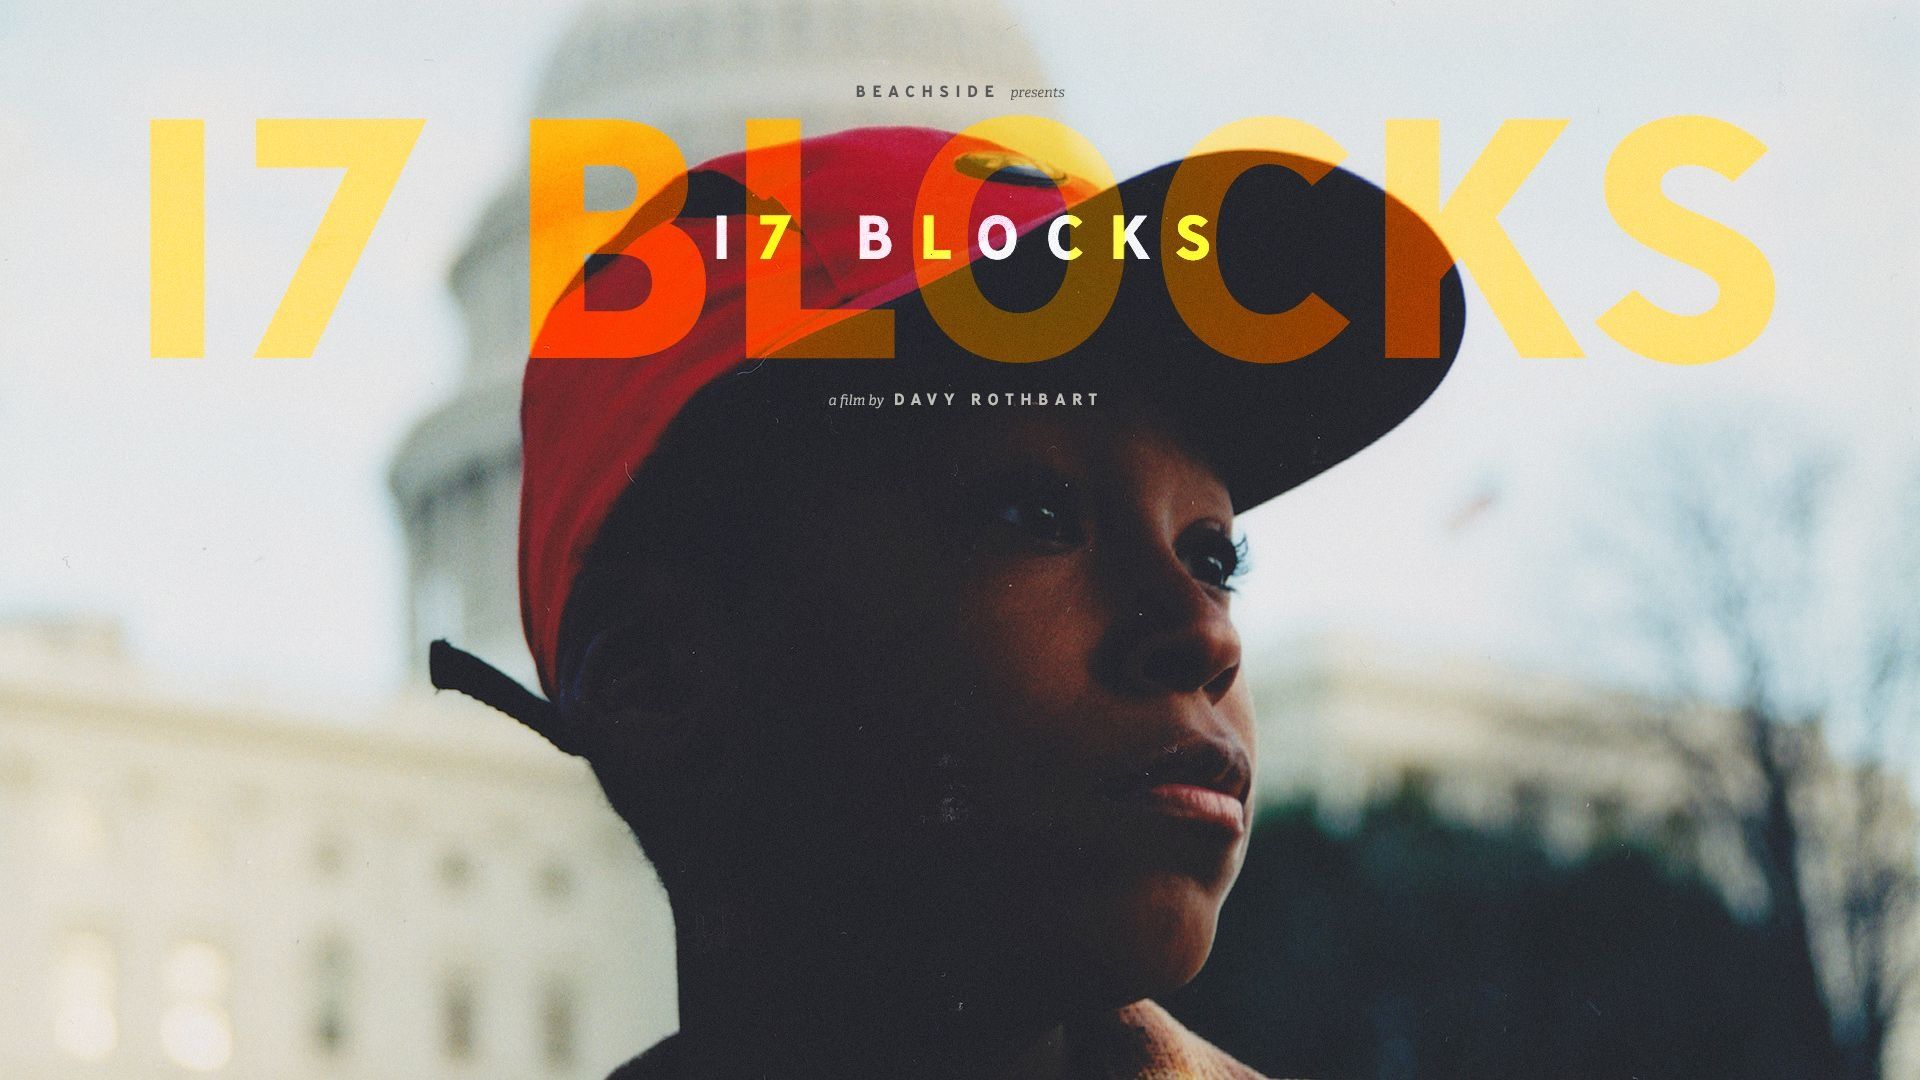 Affiche du film "17 Blocks", réalisé par Davy Rothbart